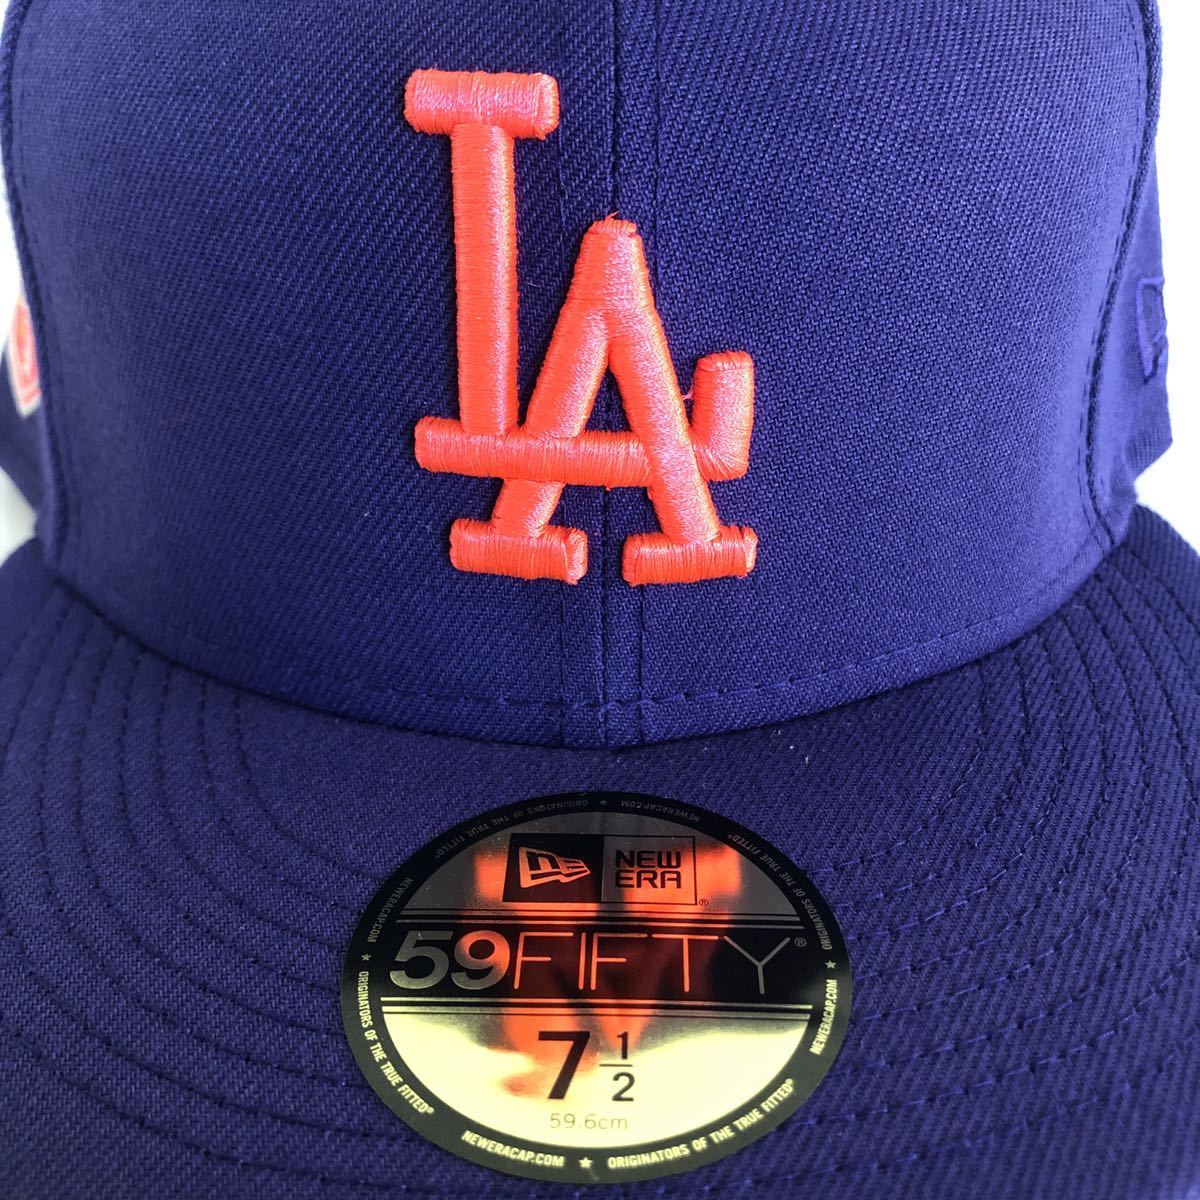 新品 New Era ツバ裏レッド 59FIFTY LA Dodgers Purple Cap Red Under Visor Brim 7 1/2 59.6cm ニューエラ ドジャース キャップ パープル_画像2